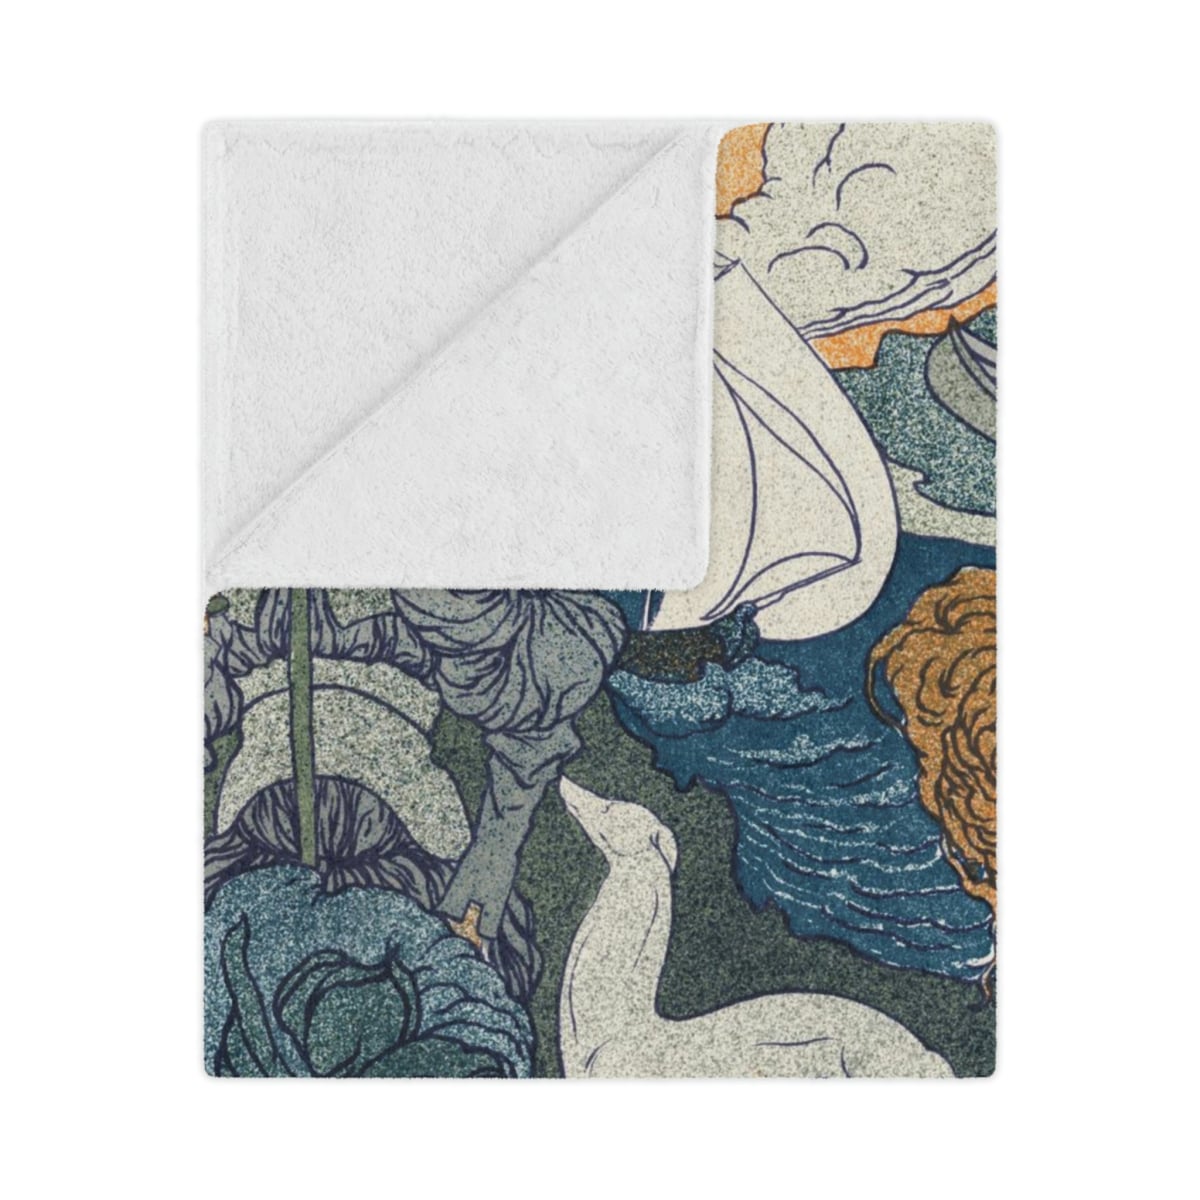 Retour by Georges de Feure: Artistic Blankets for Cozy Elegance